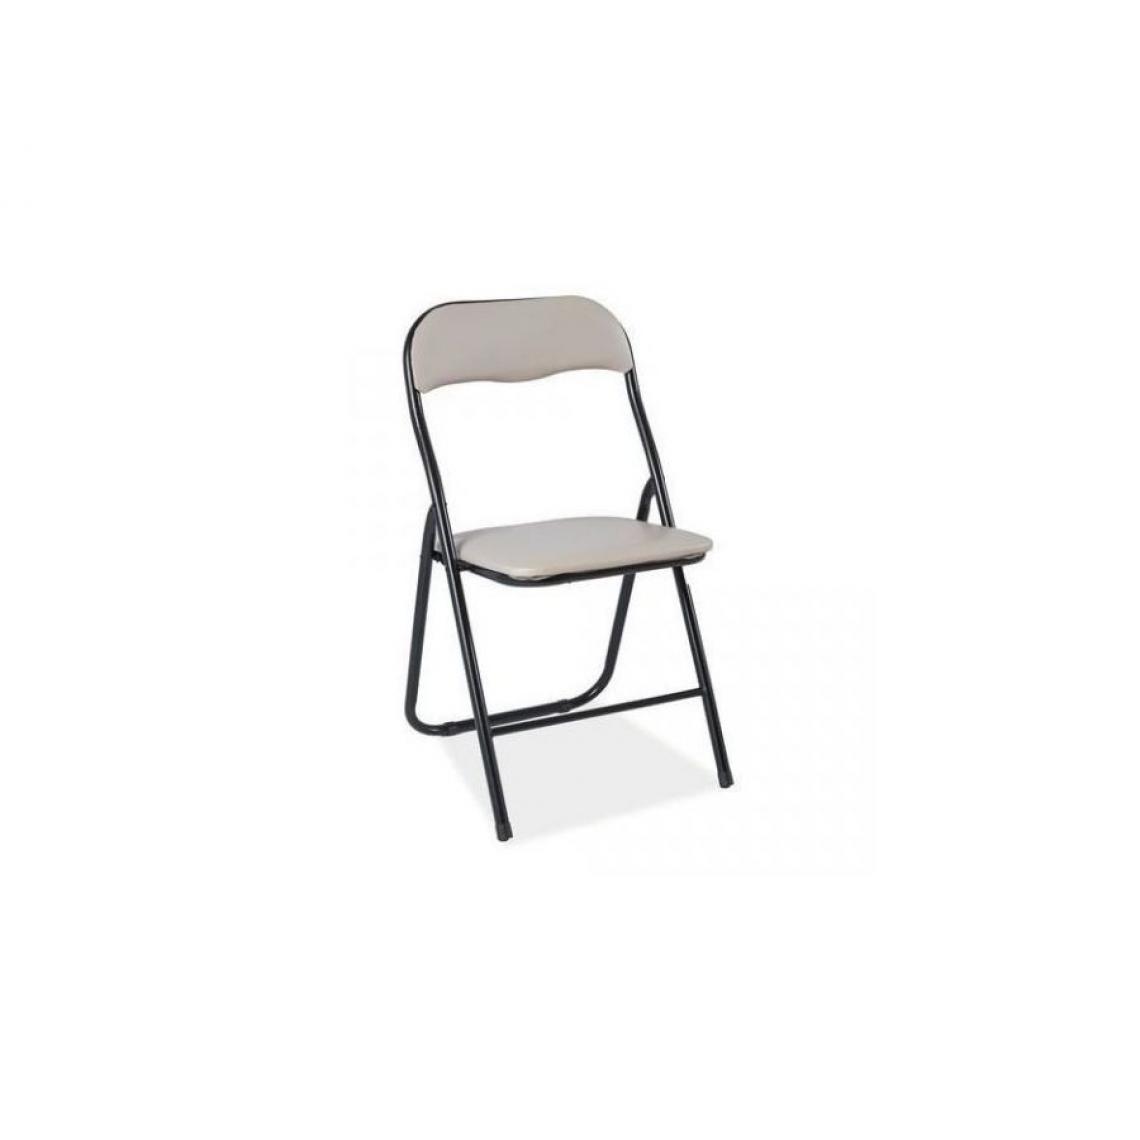 Hucoco - YANI | Chaise en plastique style scandinave | 80x40x40 cm |Assise et dossier rembourrés en similicuir | Cadre en métal - Beige - Chaises